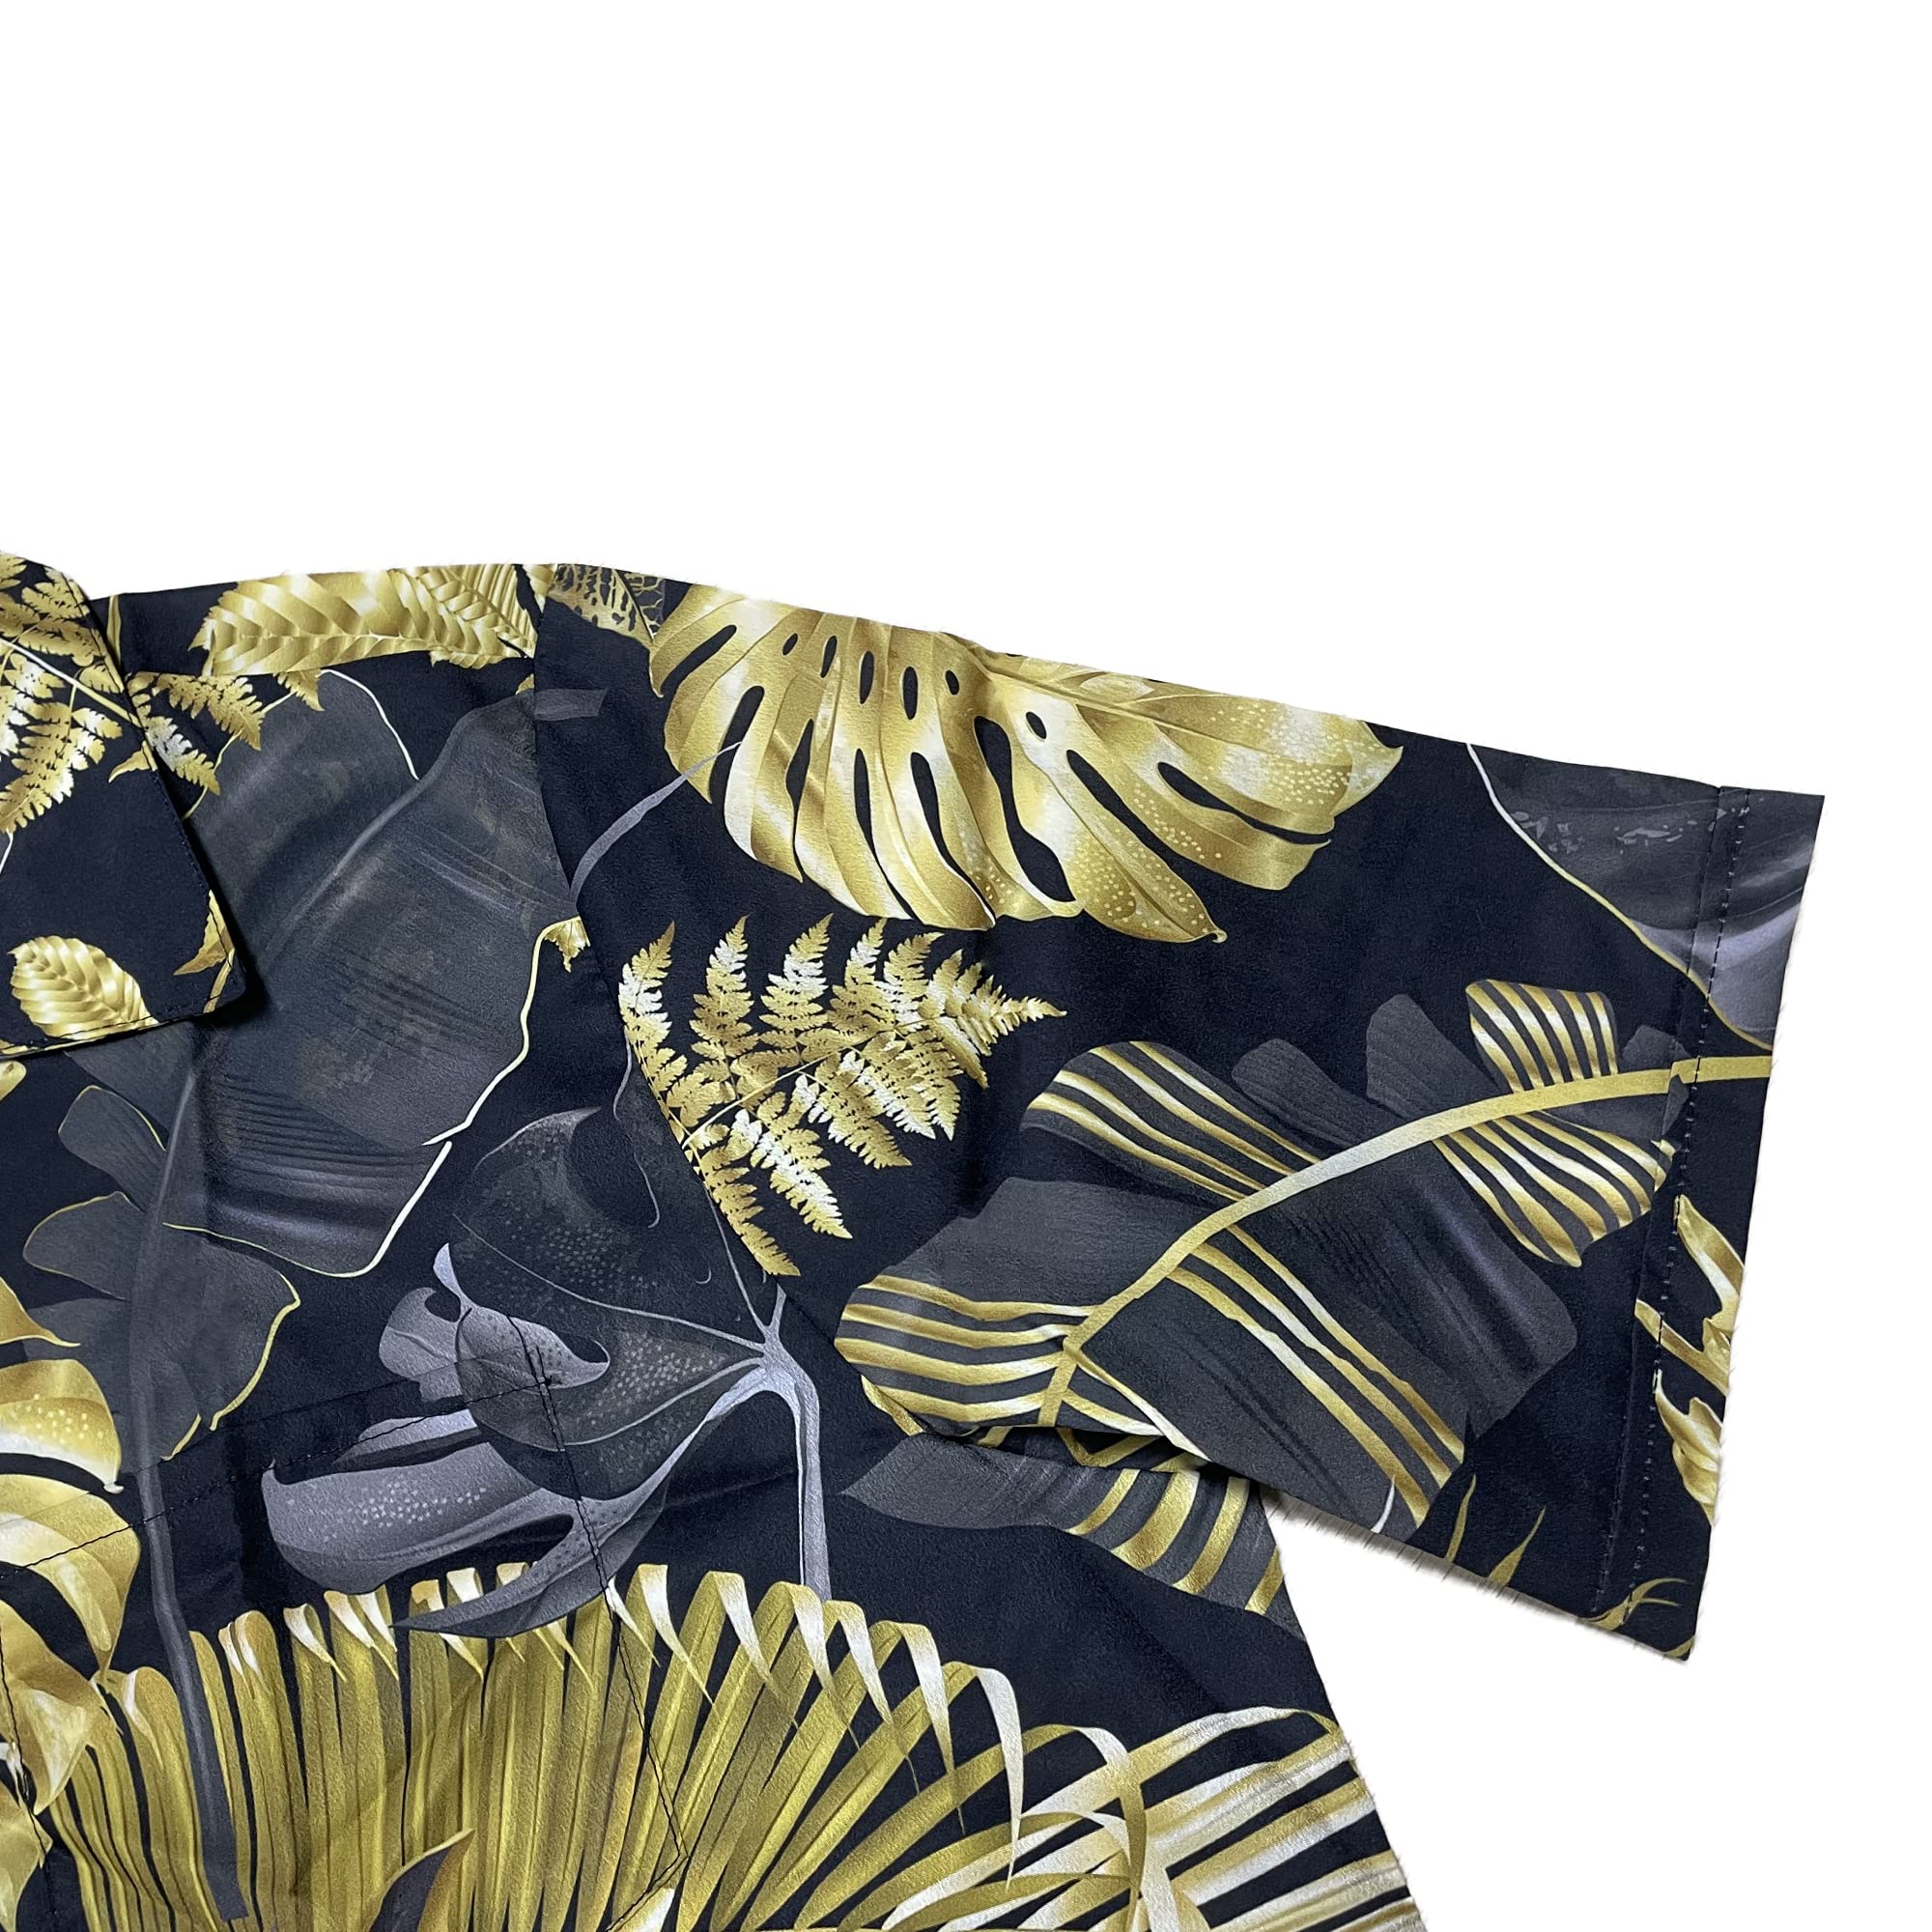 Men's Hawaiian Shirt Casual Button Down Short Sleeves Beach Shirt - Golden Palm Leaf